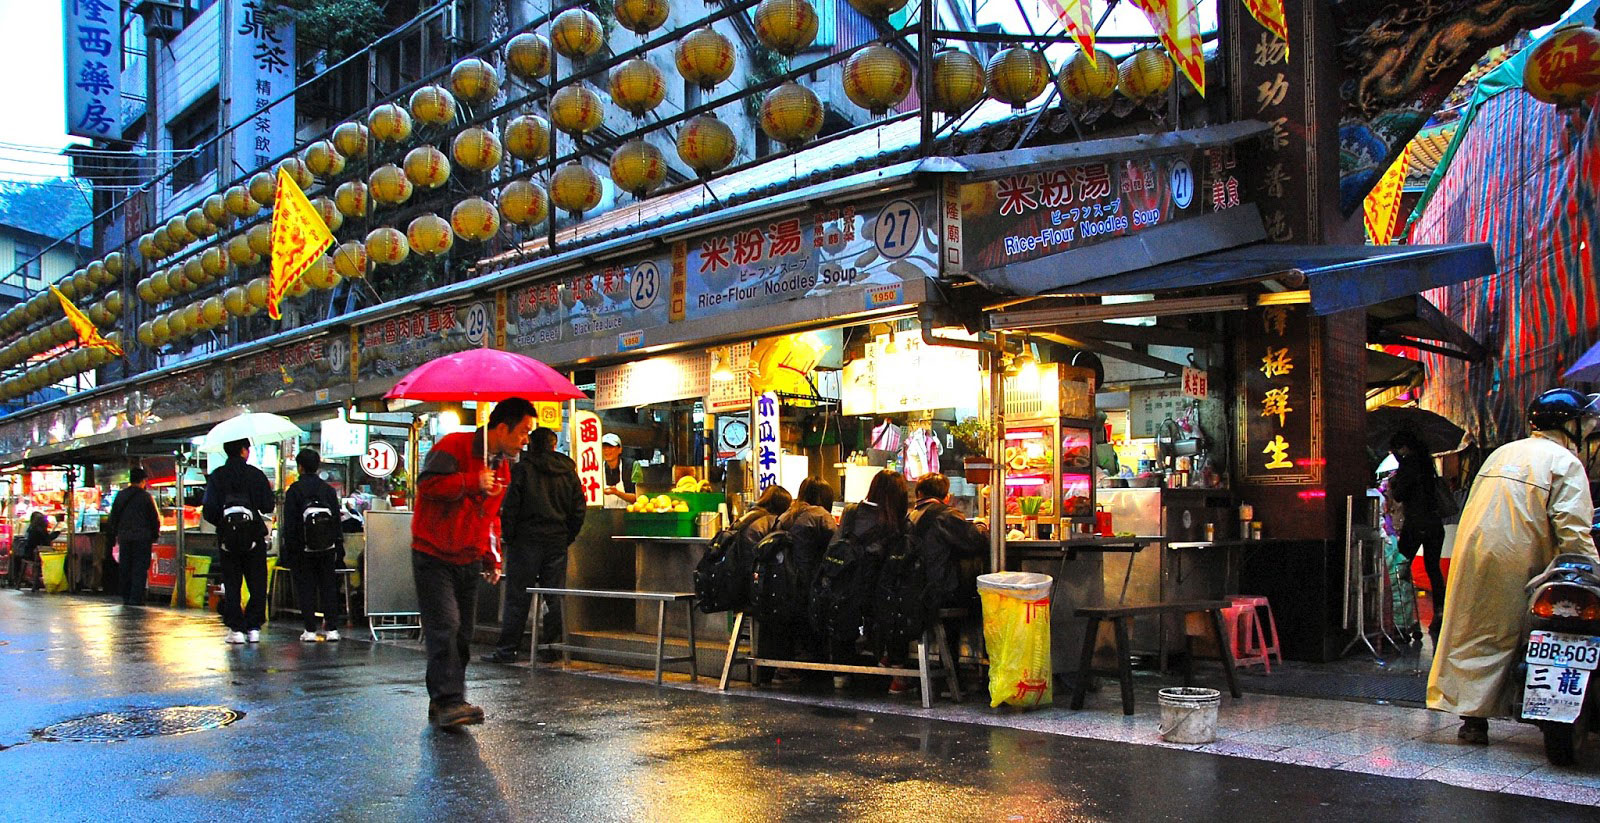 Du lịch Bụi Đài Loan - chợ đêm Miaokou